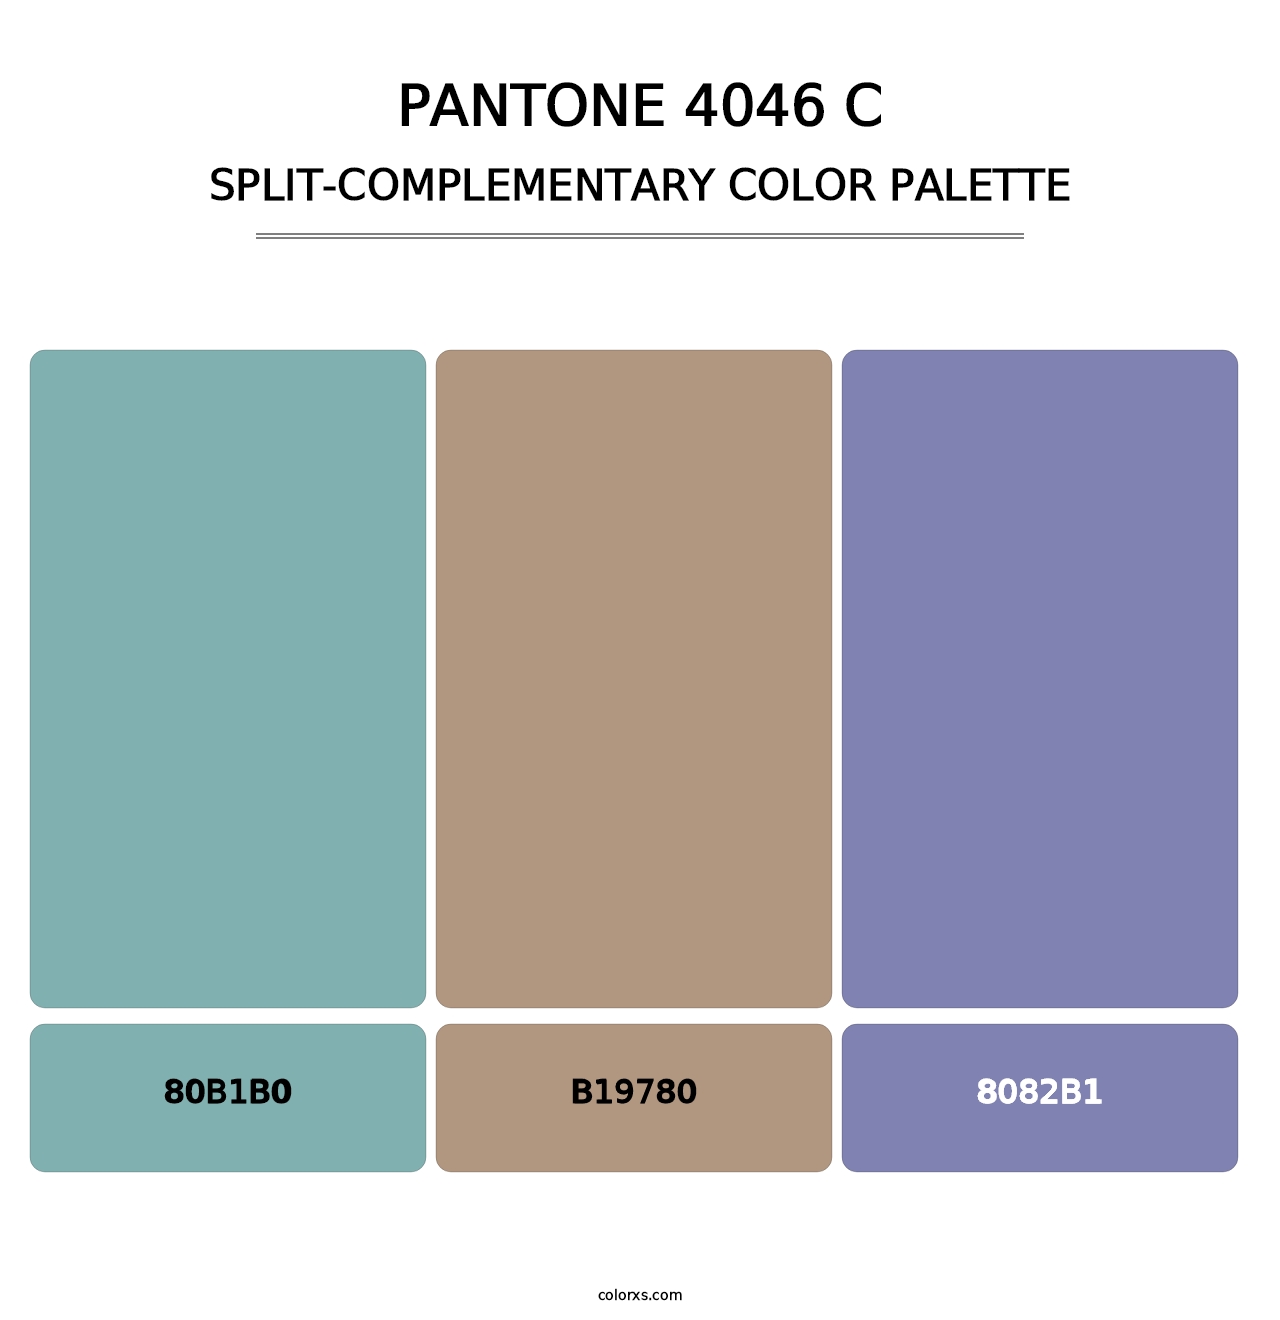 PANTONE 4046 C - Split-Complementary Color Palette